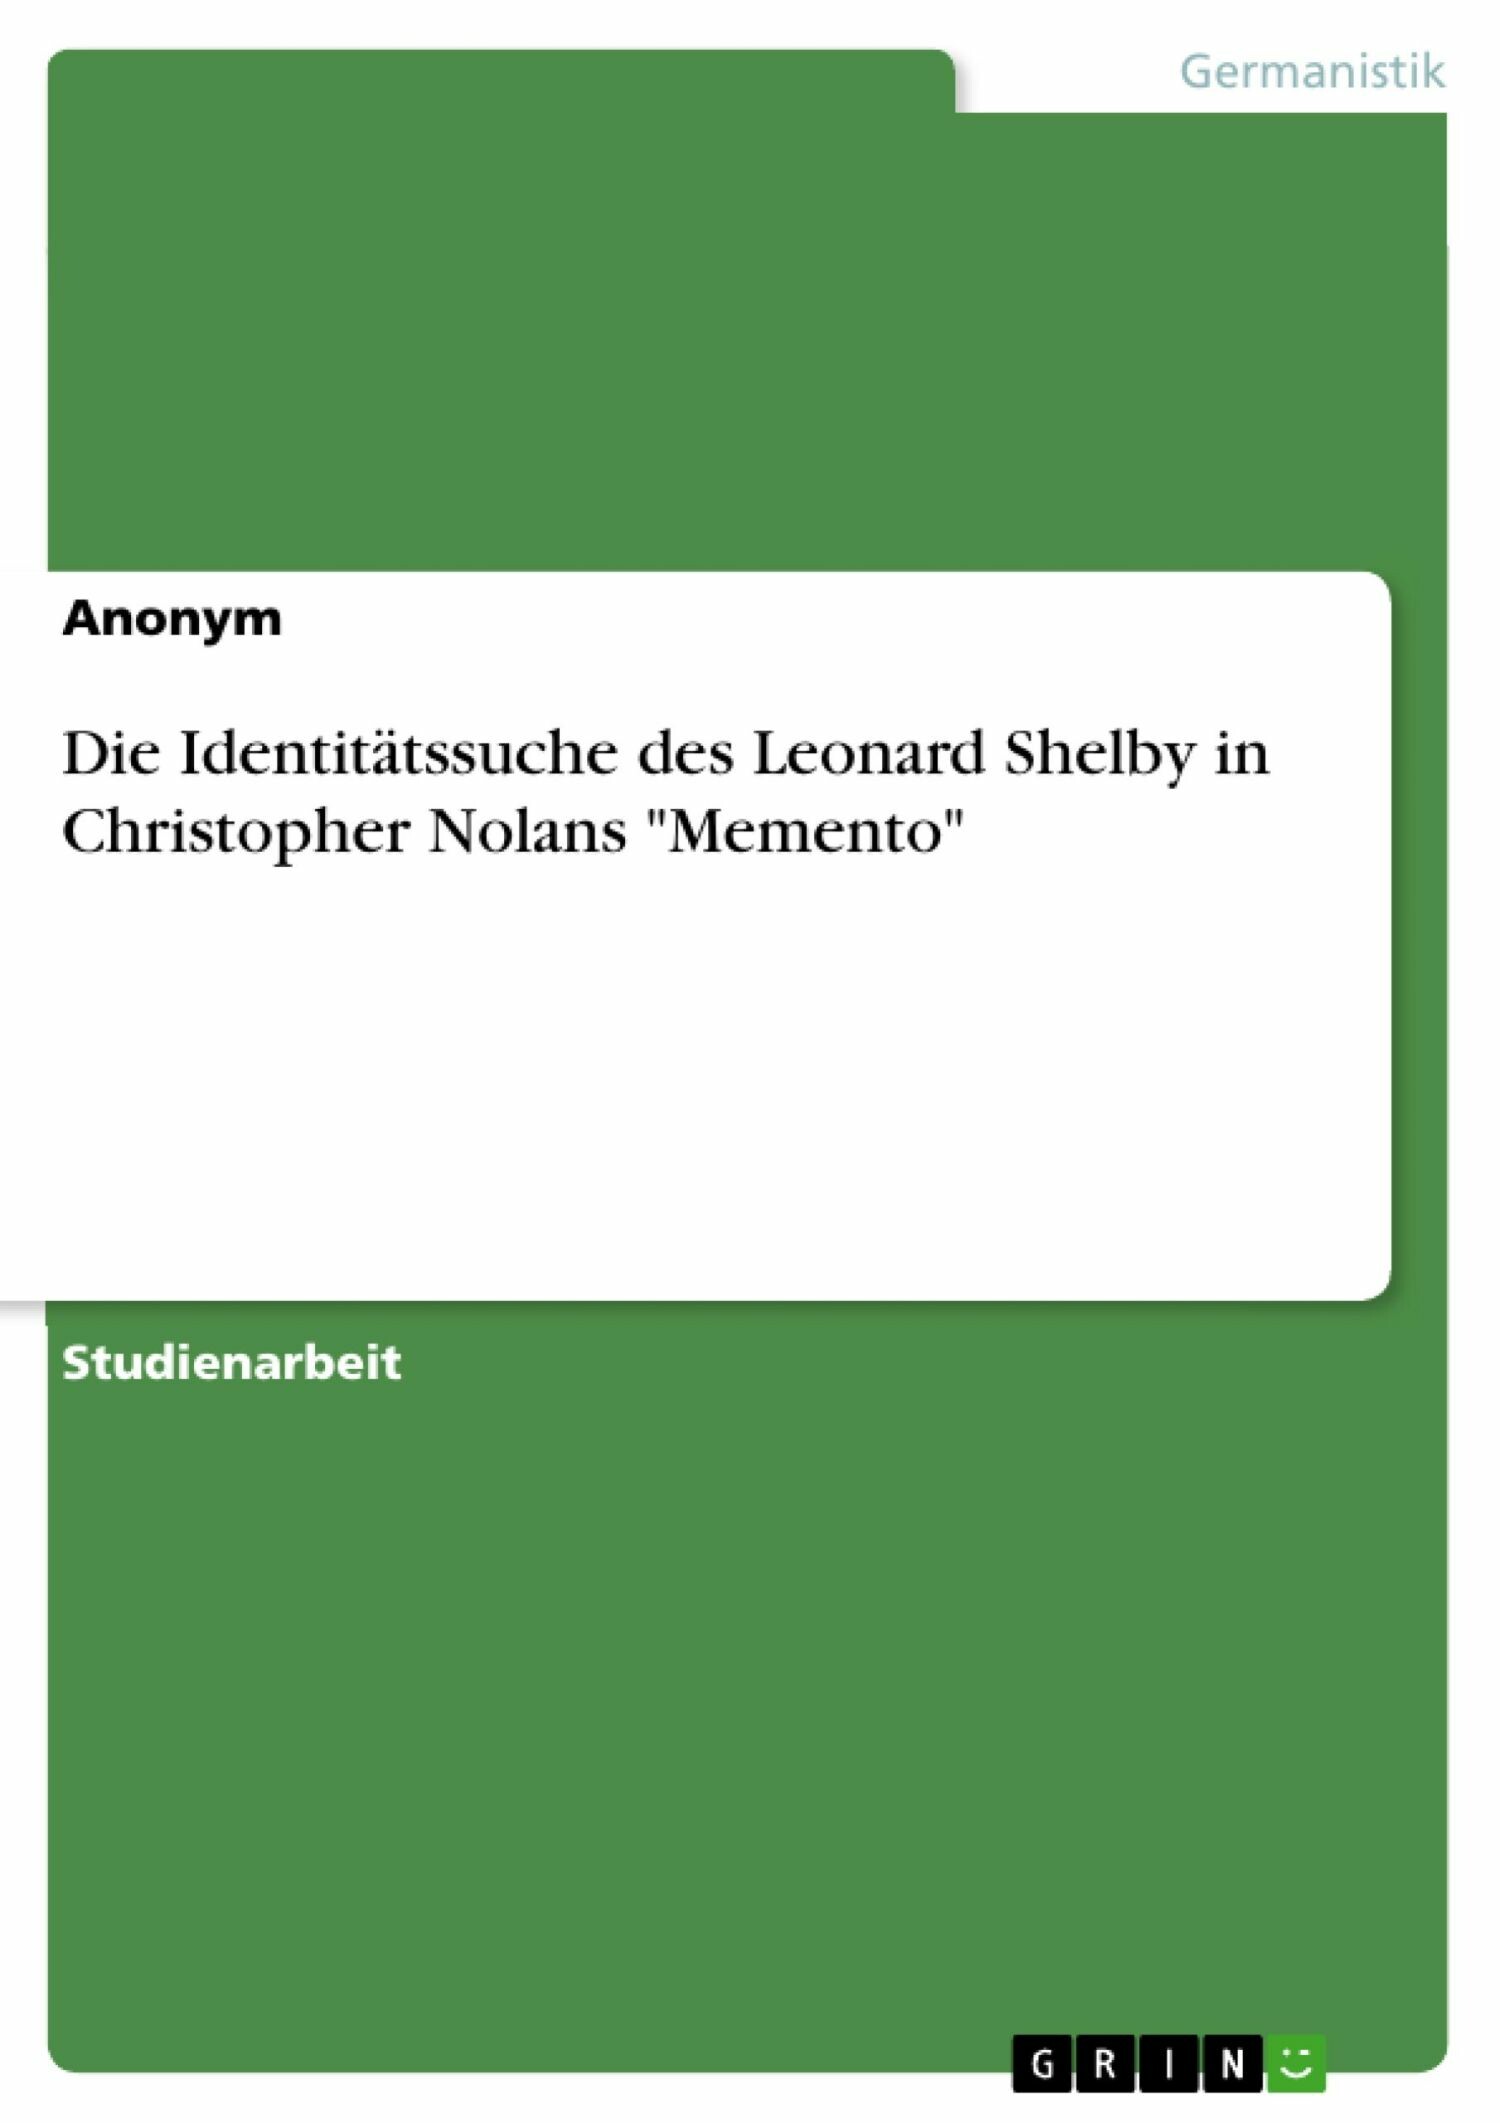 Die Identitätssuche des Leonard Shelby in Christopher Nolans 'Memento'